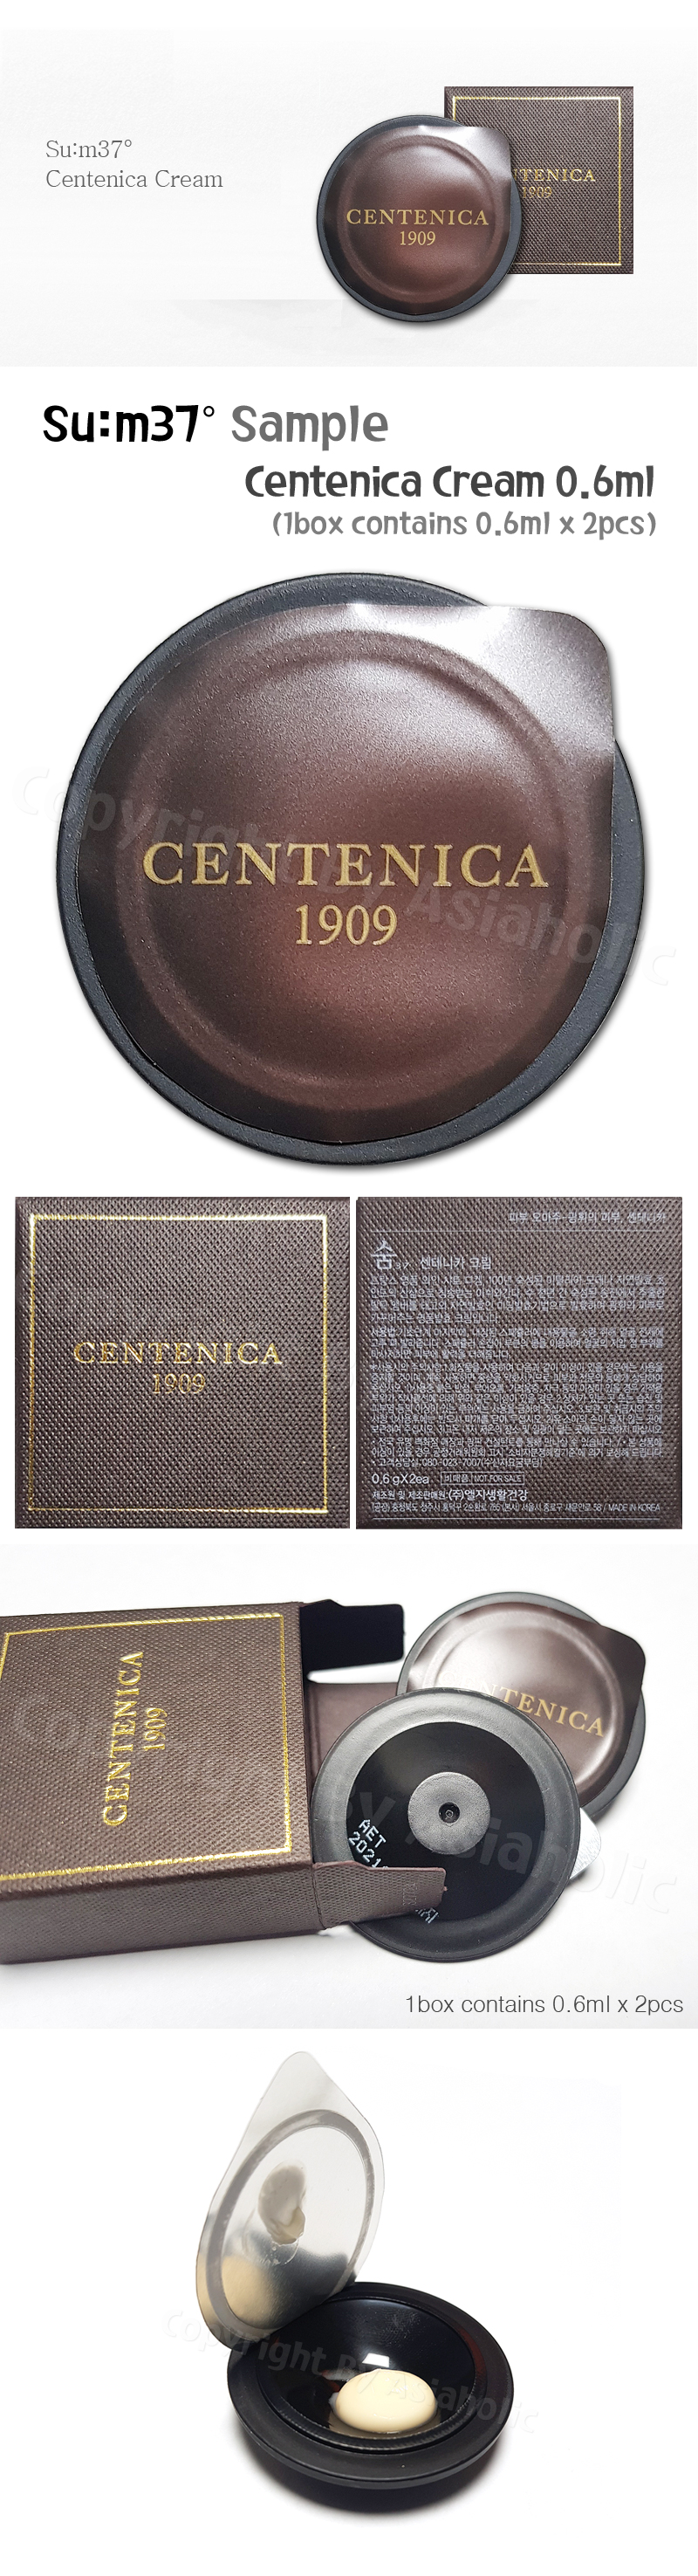 SU:M37 Centenica Cream 0.6ml x 6pcs (3Box) Premium Sample Sum37 Newest Version